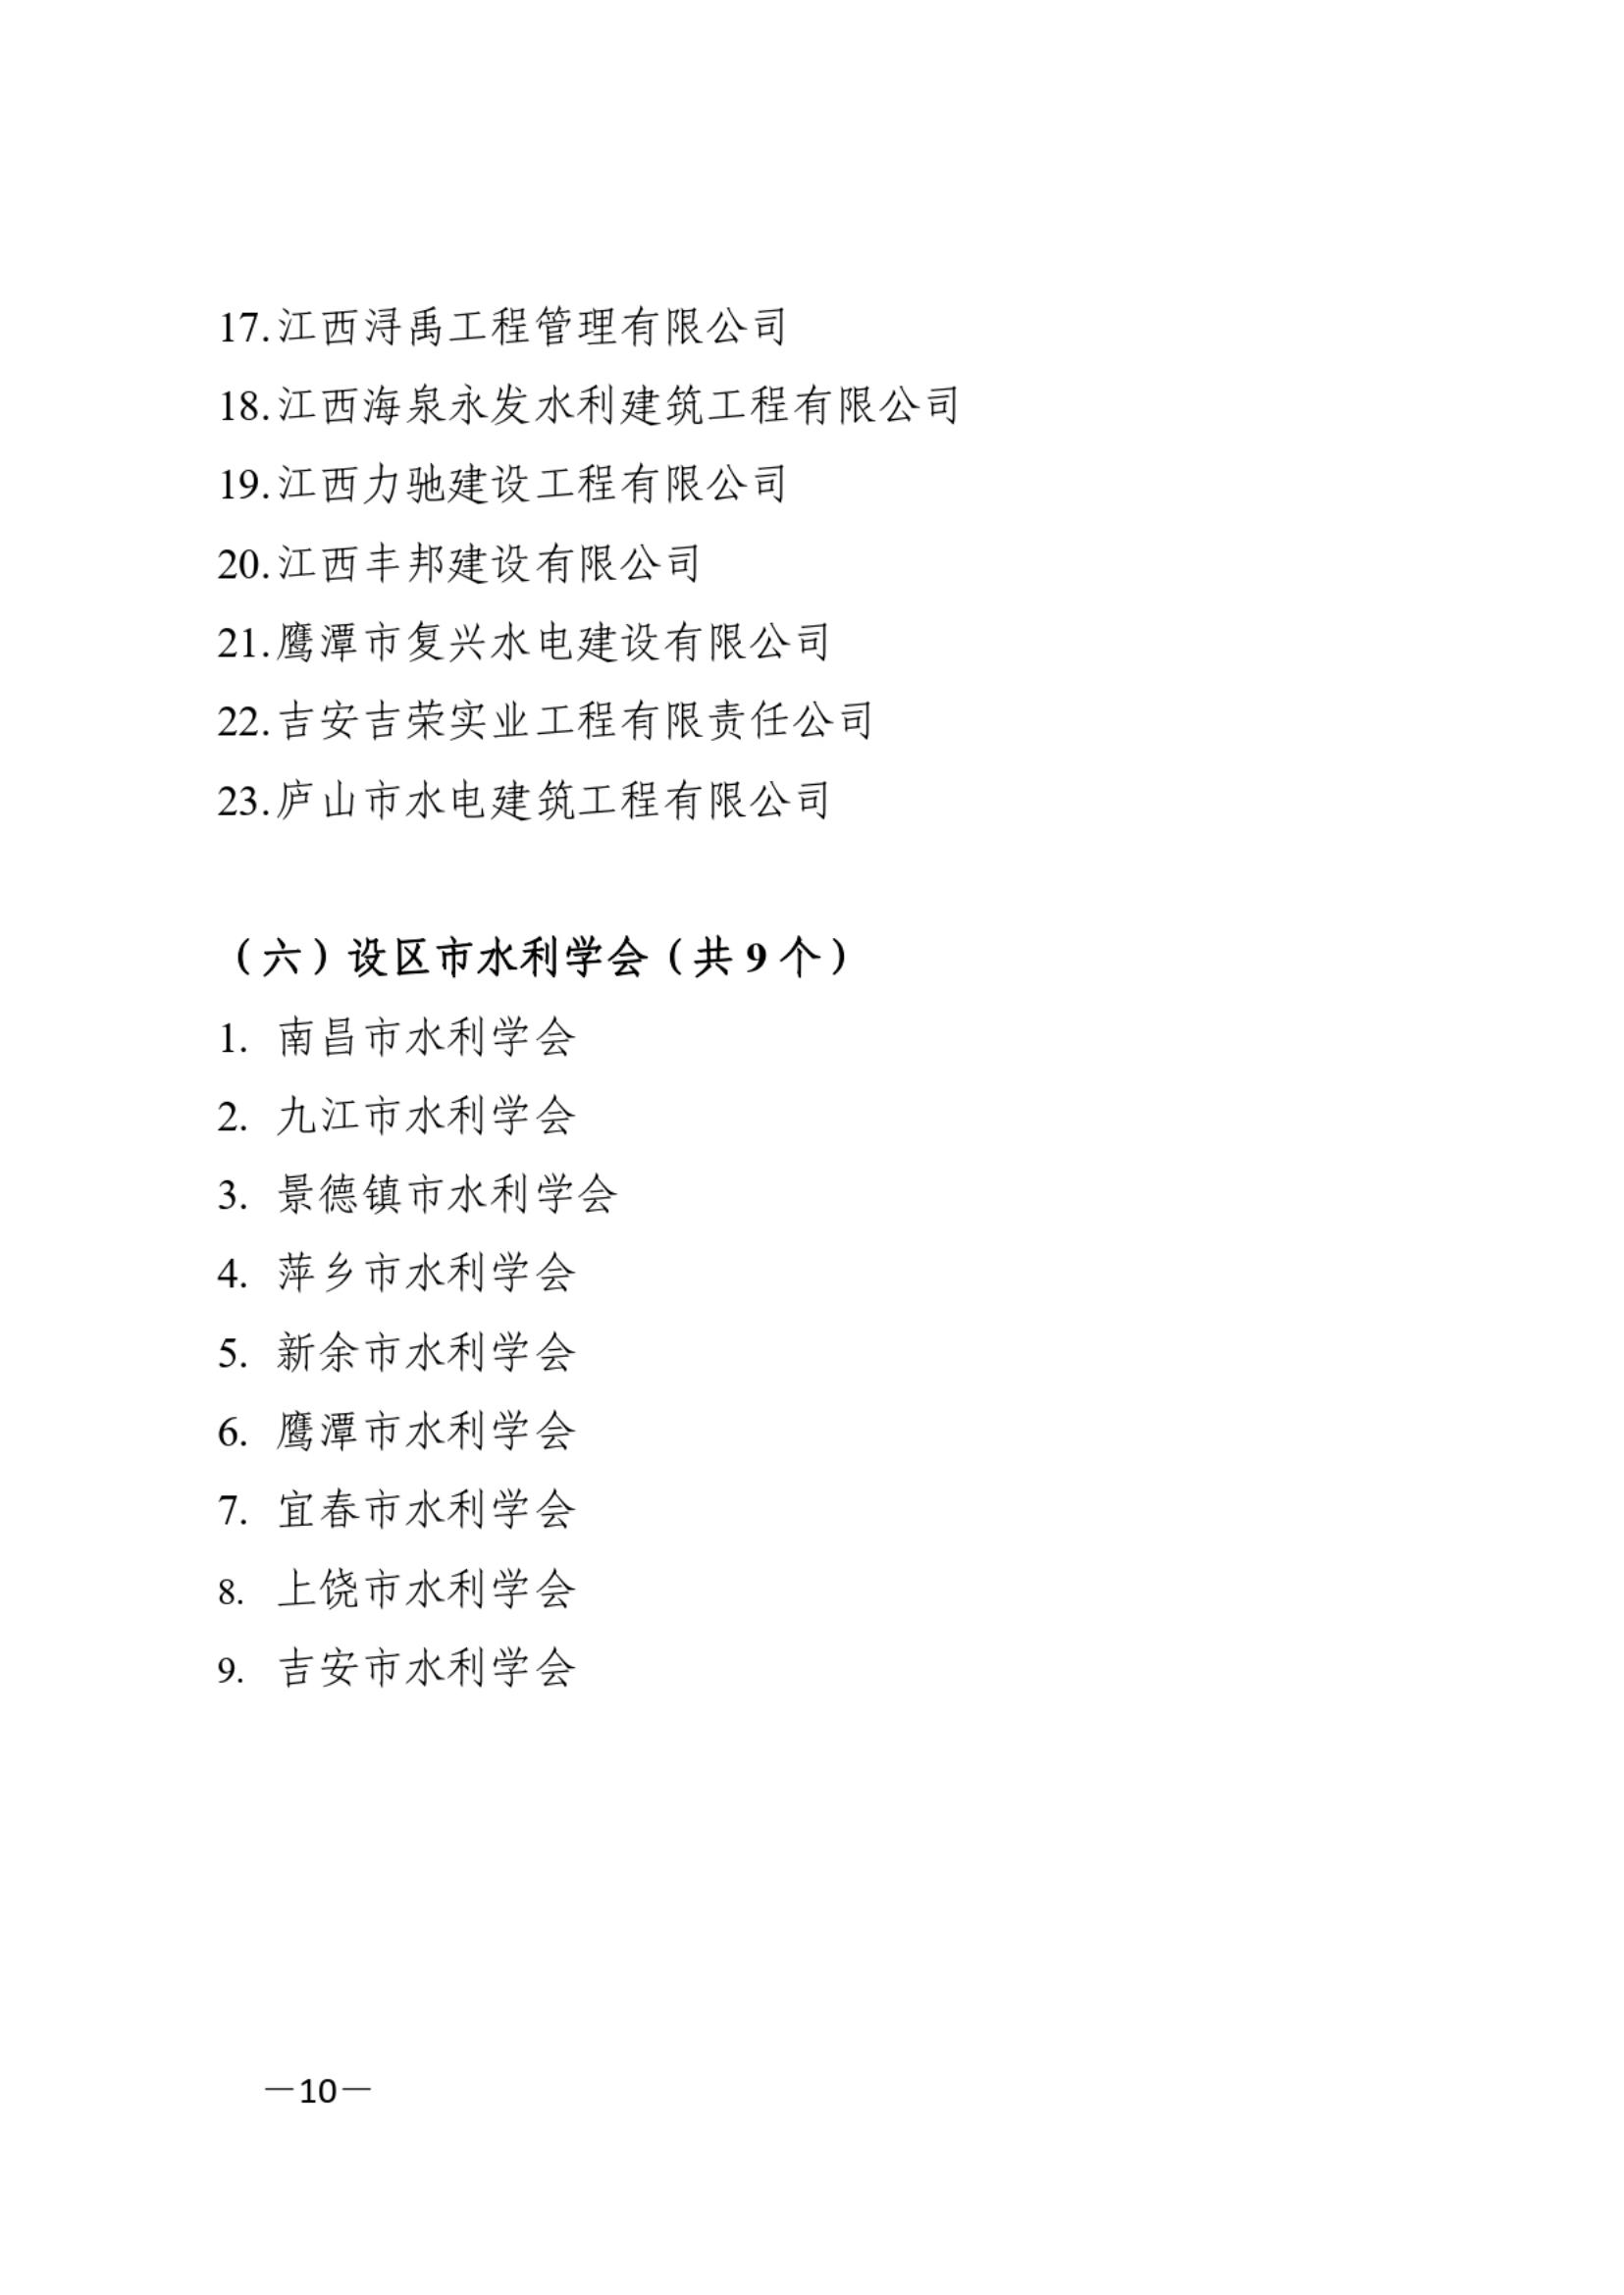 江西省水利学会关于第八届理事会选举结果的通知_09.jpg